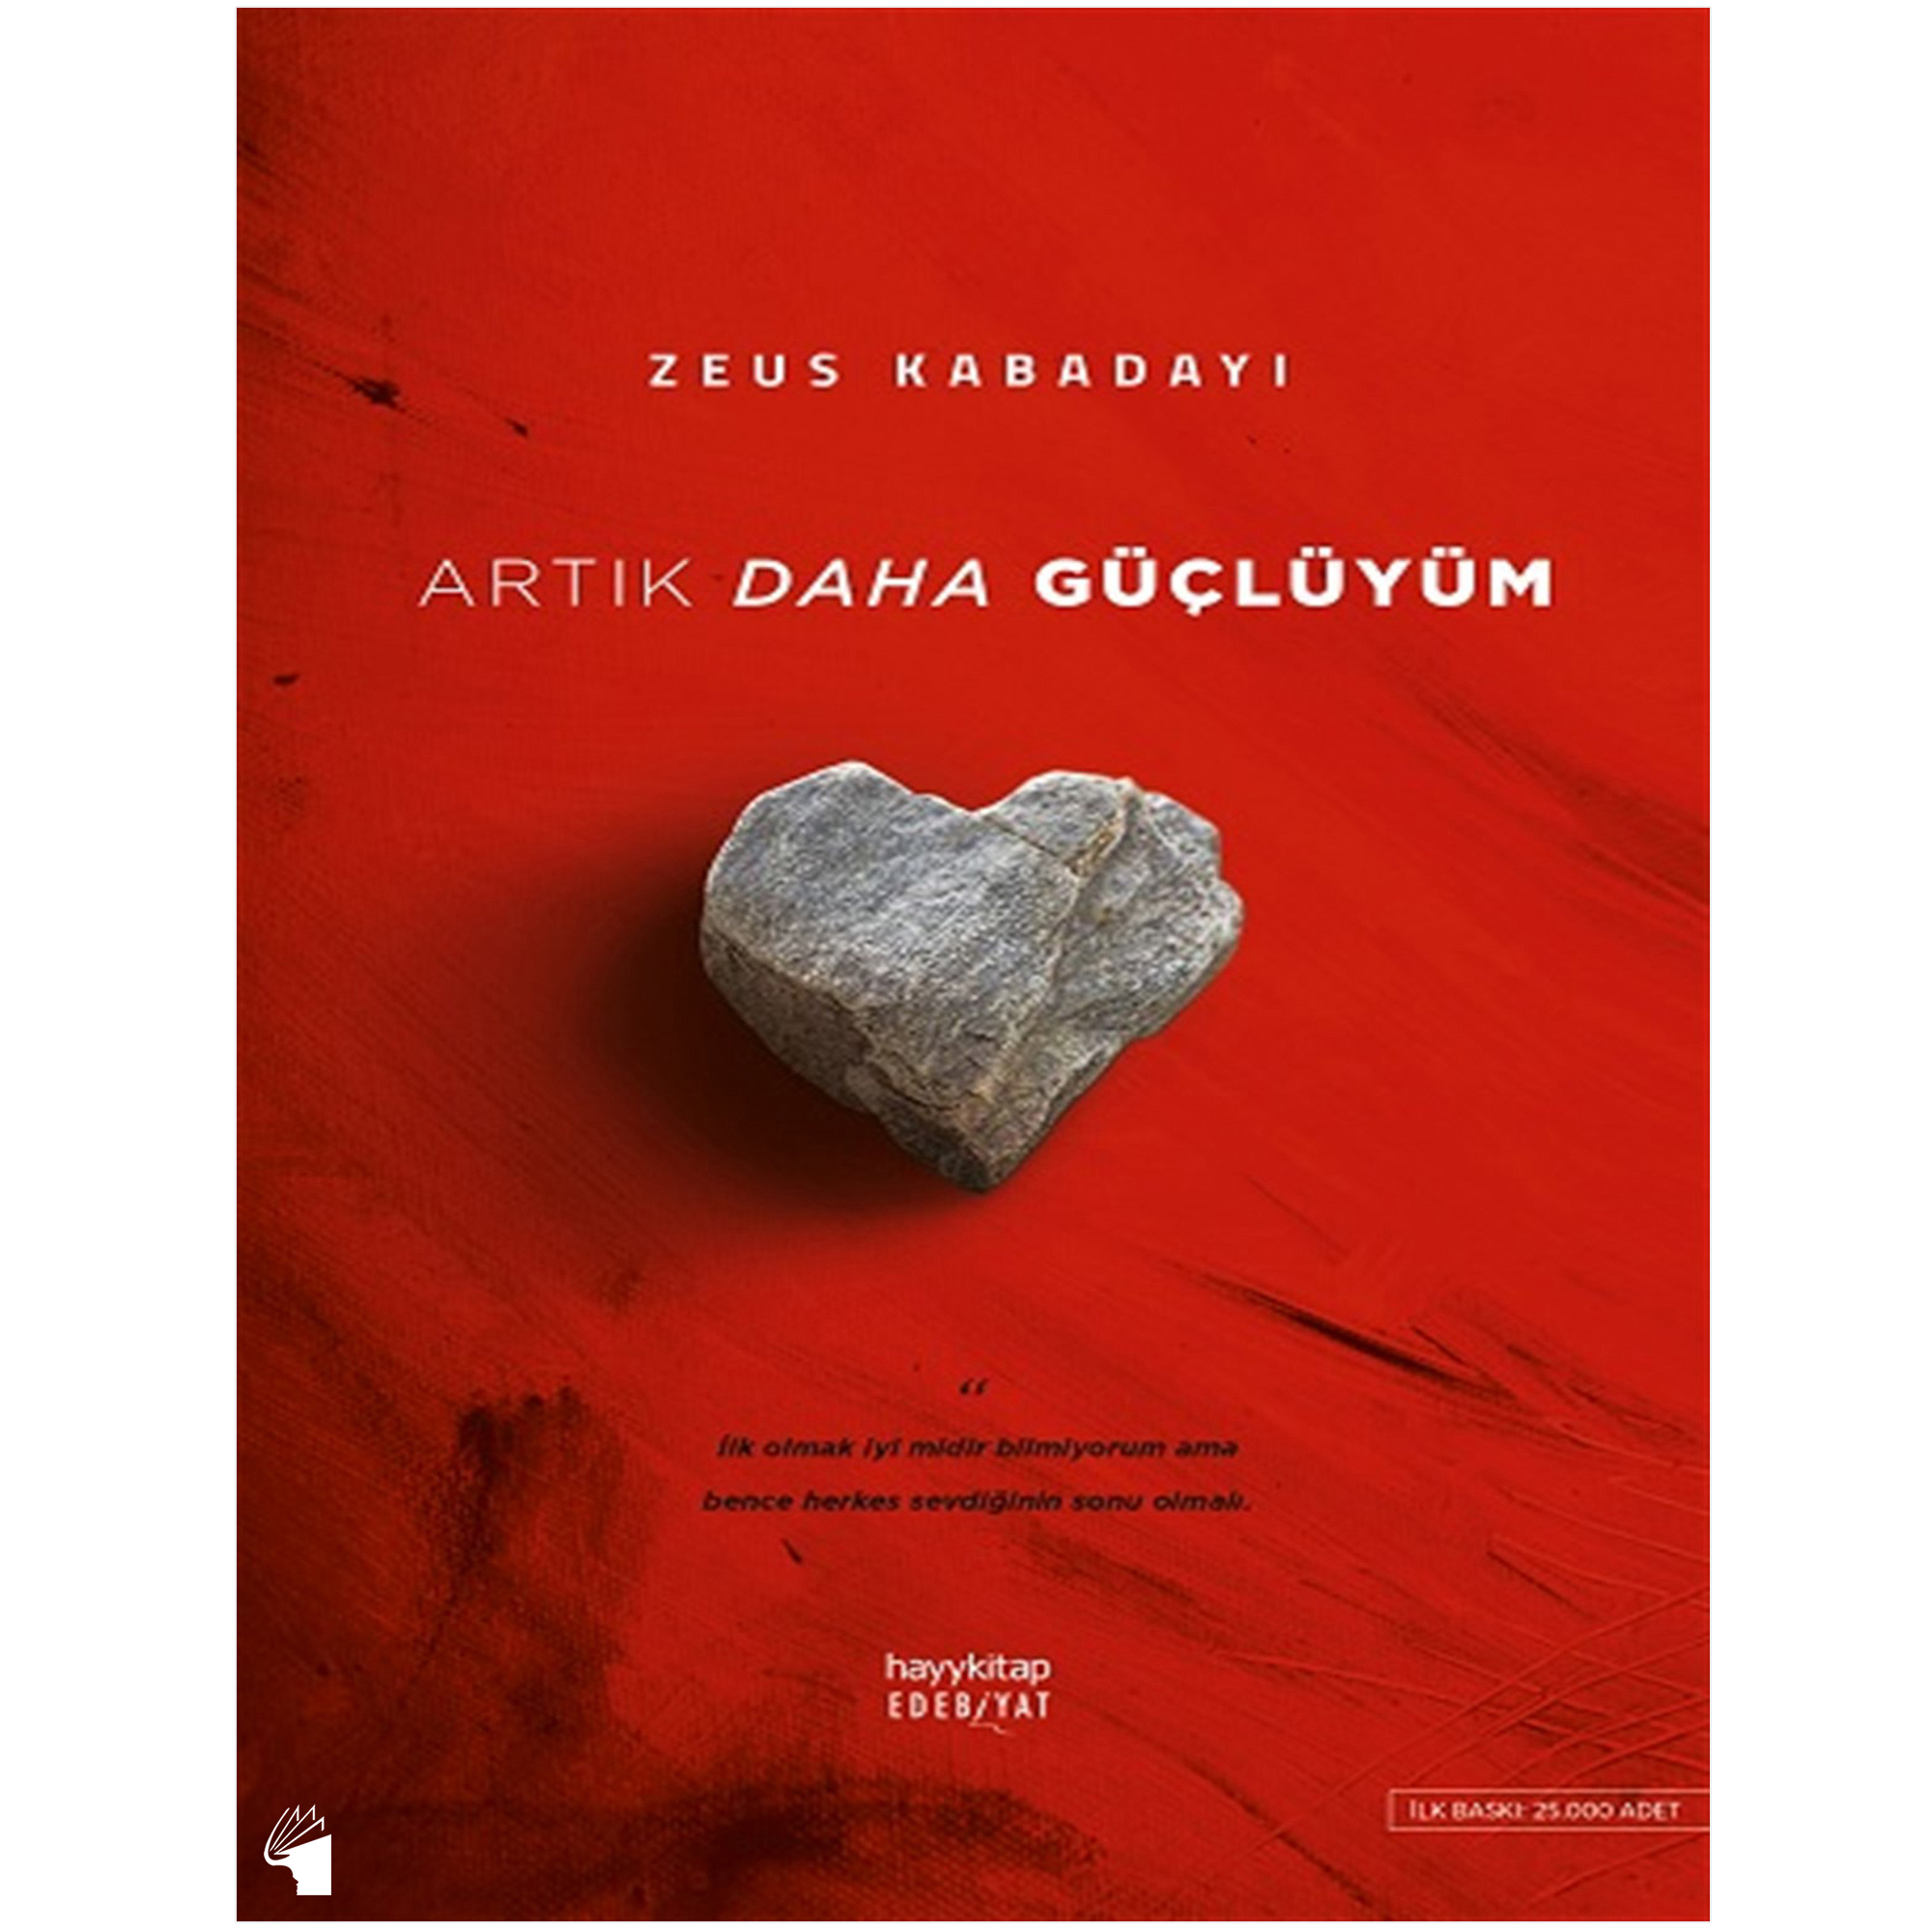 نقد و بررسی کتاب Artik Daha Gucluyum اثر Zeus Kabadayi انتشارات معیار علم توسط خریداران